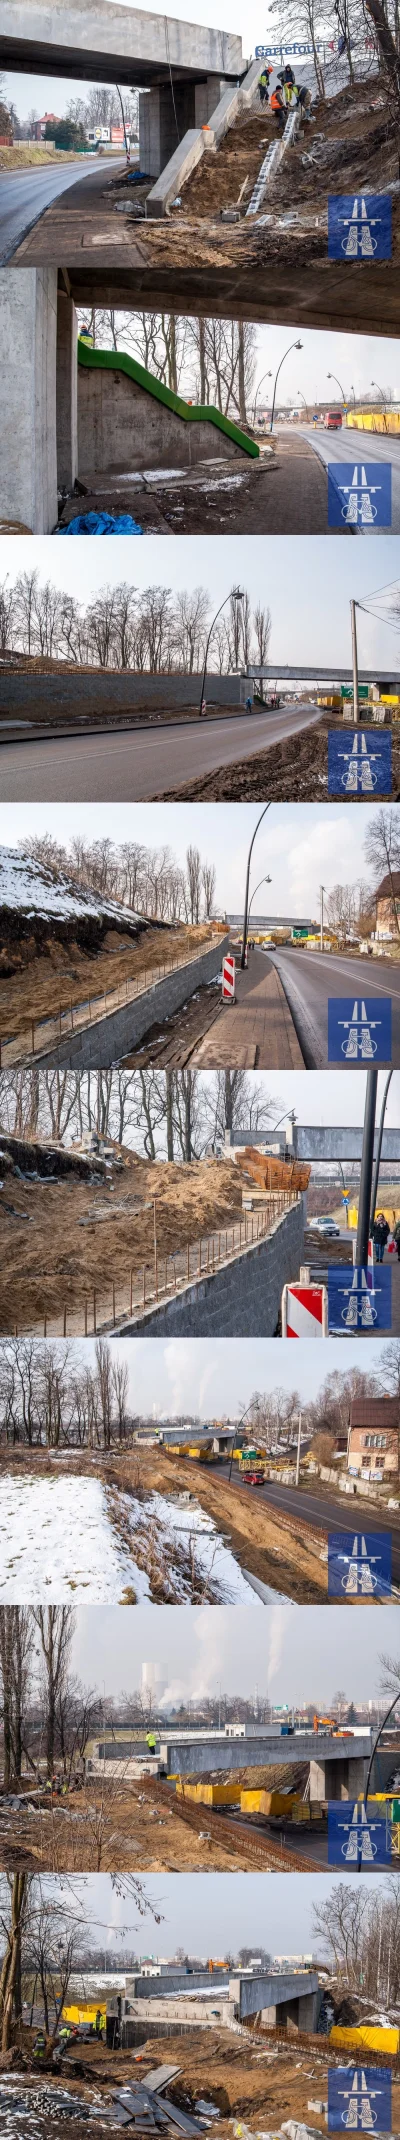 demoos - Postęp prac przy #velostradajaworzno - budowa kładki

#jaworzno #rower #sl...